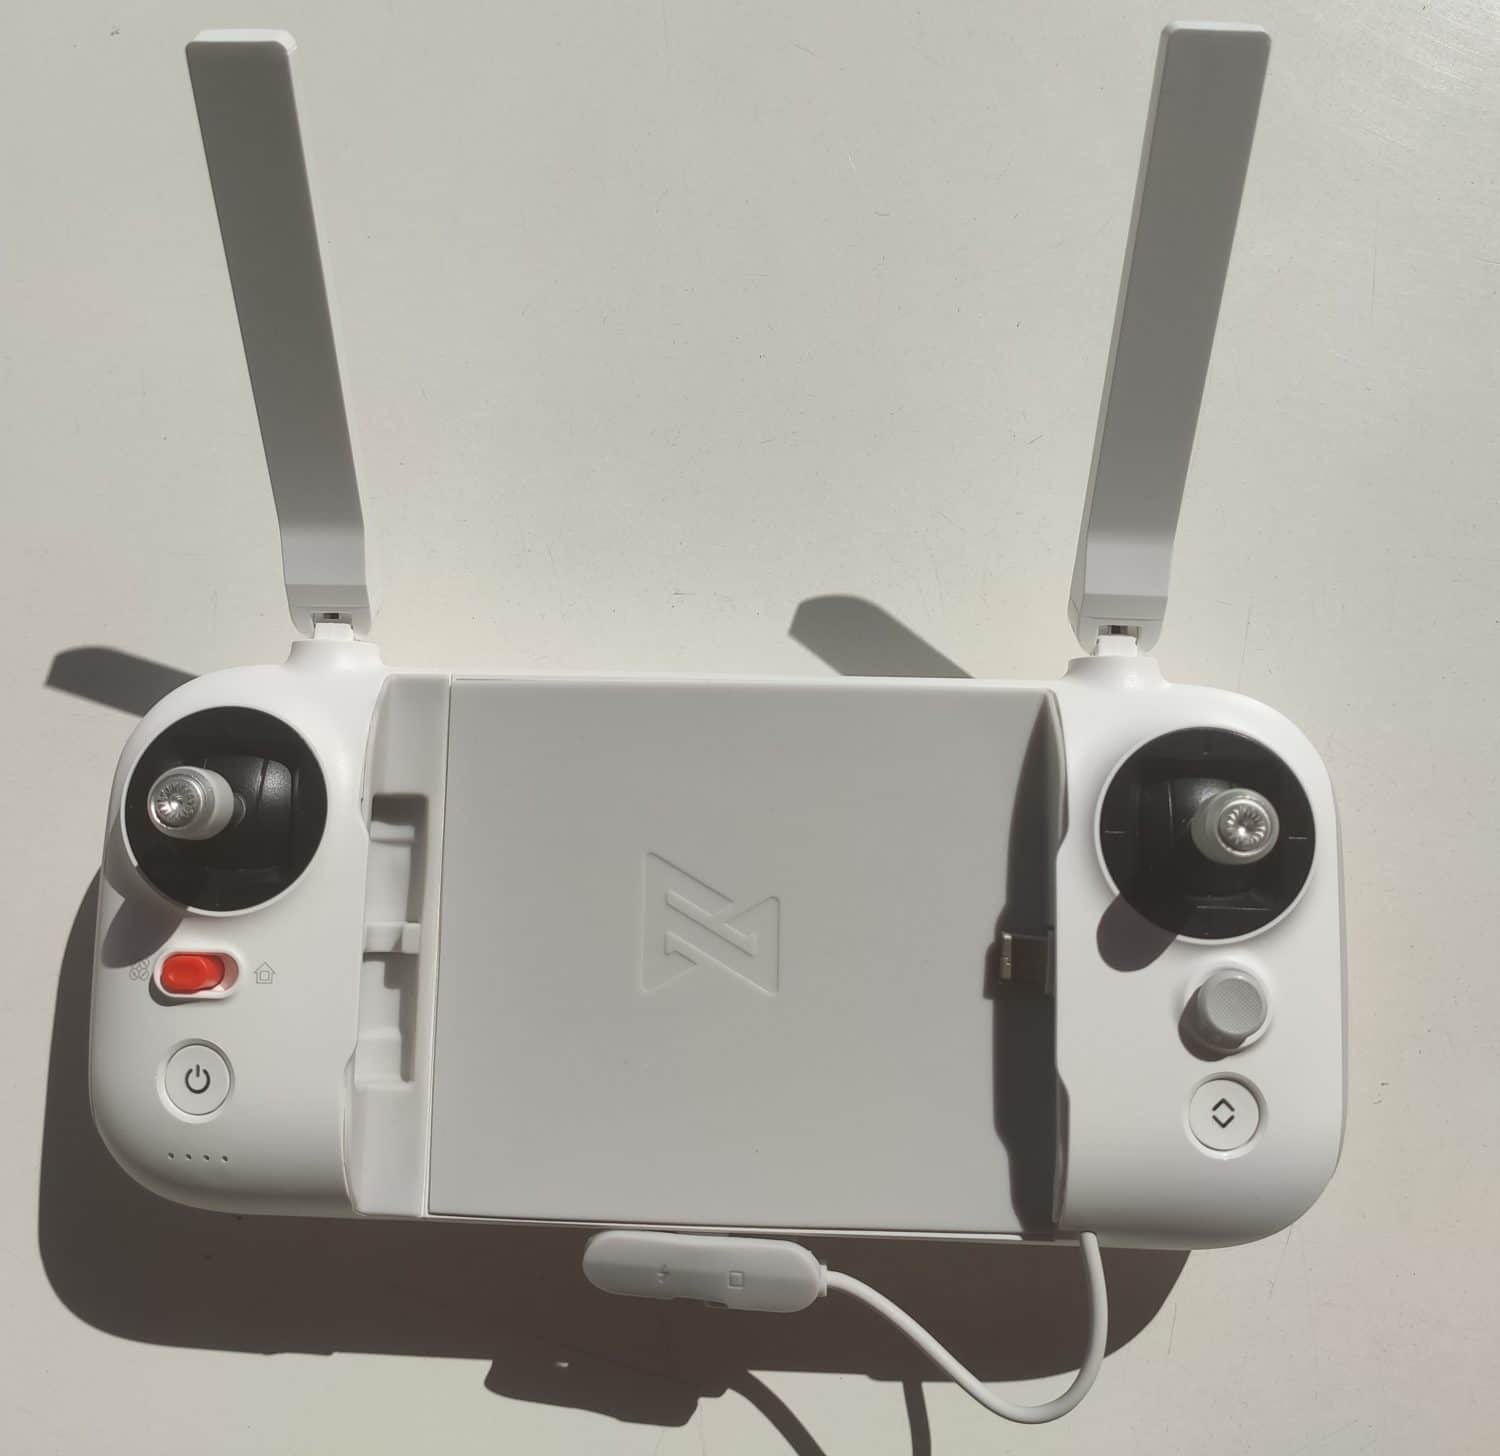 FIMI X8 SE 2020 : Test et avis - Un drone pas cher à considérer.